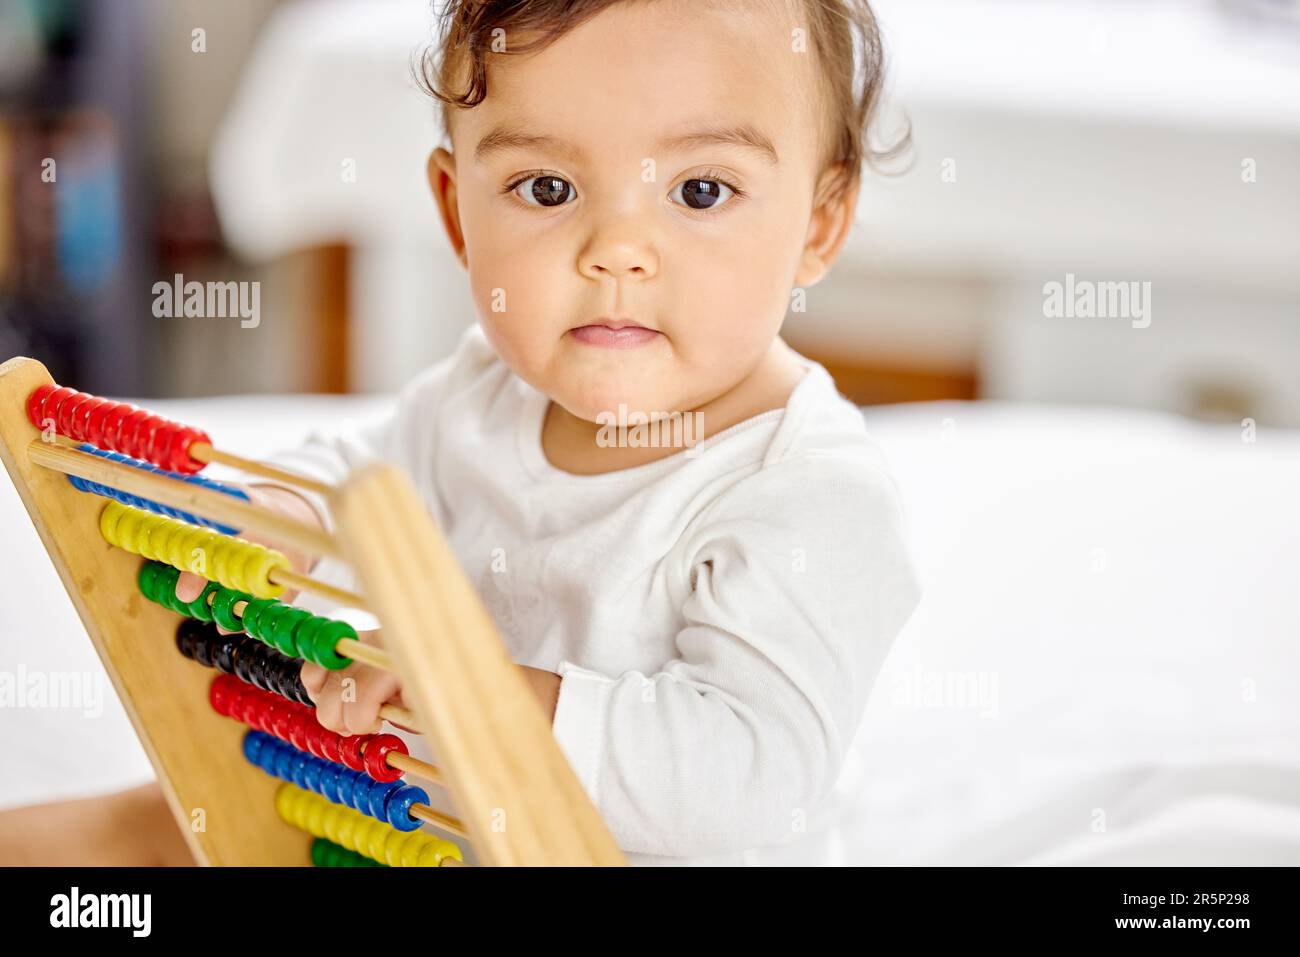 Abacus, das Schlafzimmer und das Baby spielen mit dem Spielzeug, um das Lernen, die Entwicklung und die motorischen Fähigkeiten des Kindes zu fördern. Familienhaus, Neugeborenes und Gesicht eines liebenswerten Kindes mit Stockfoto